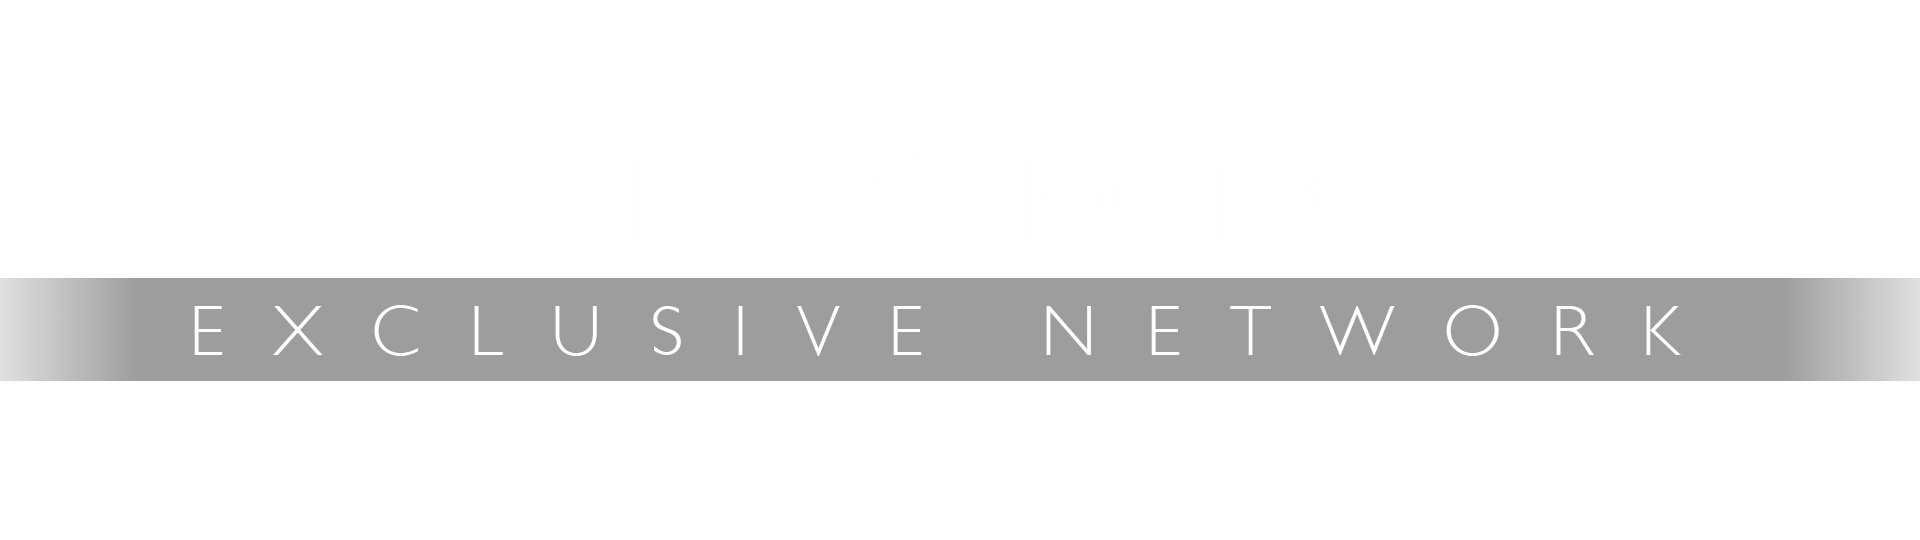 Hong Kong Expats